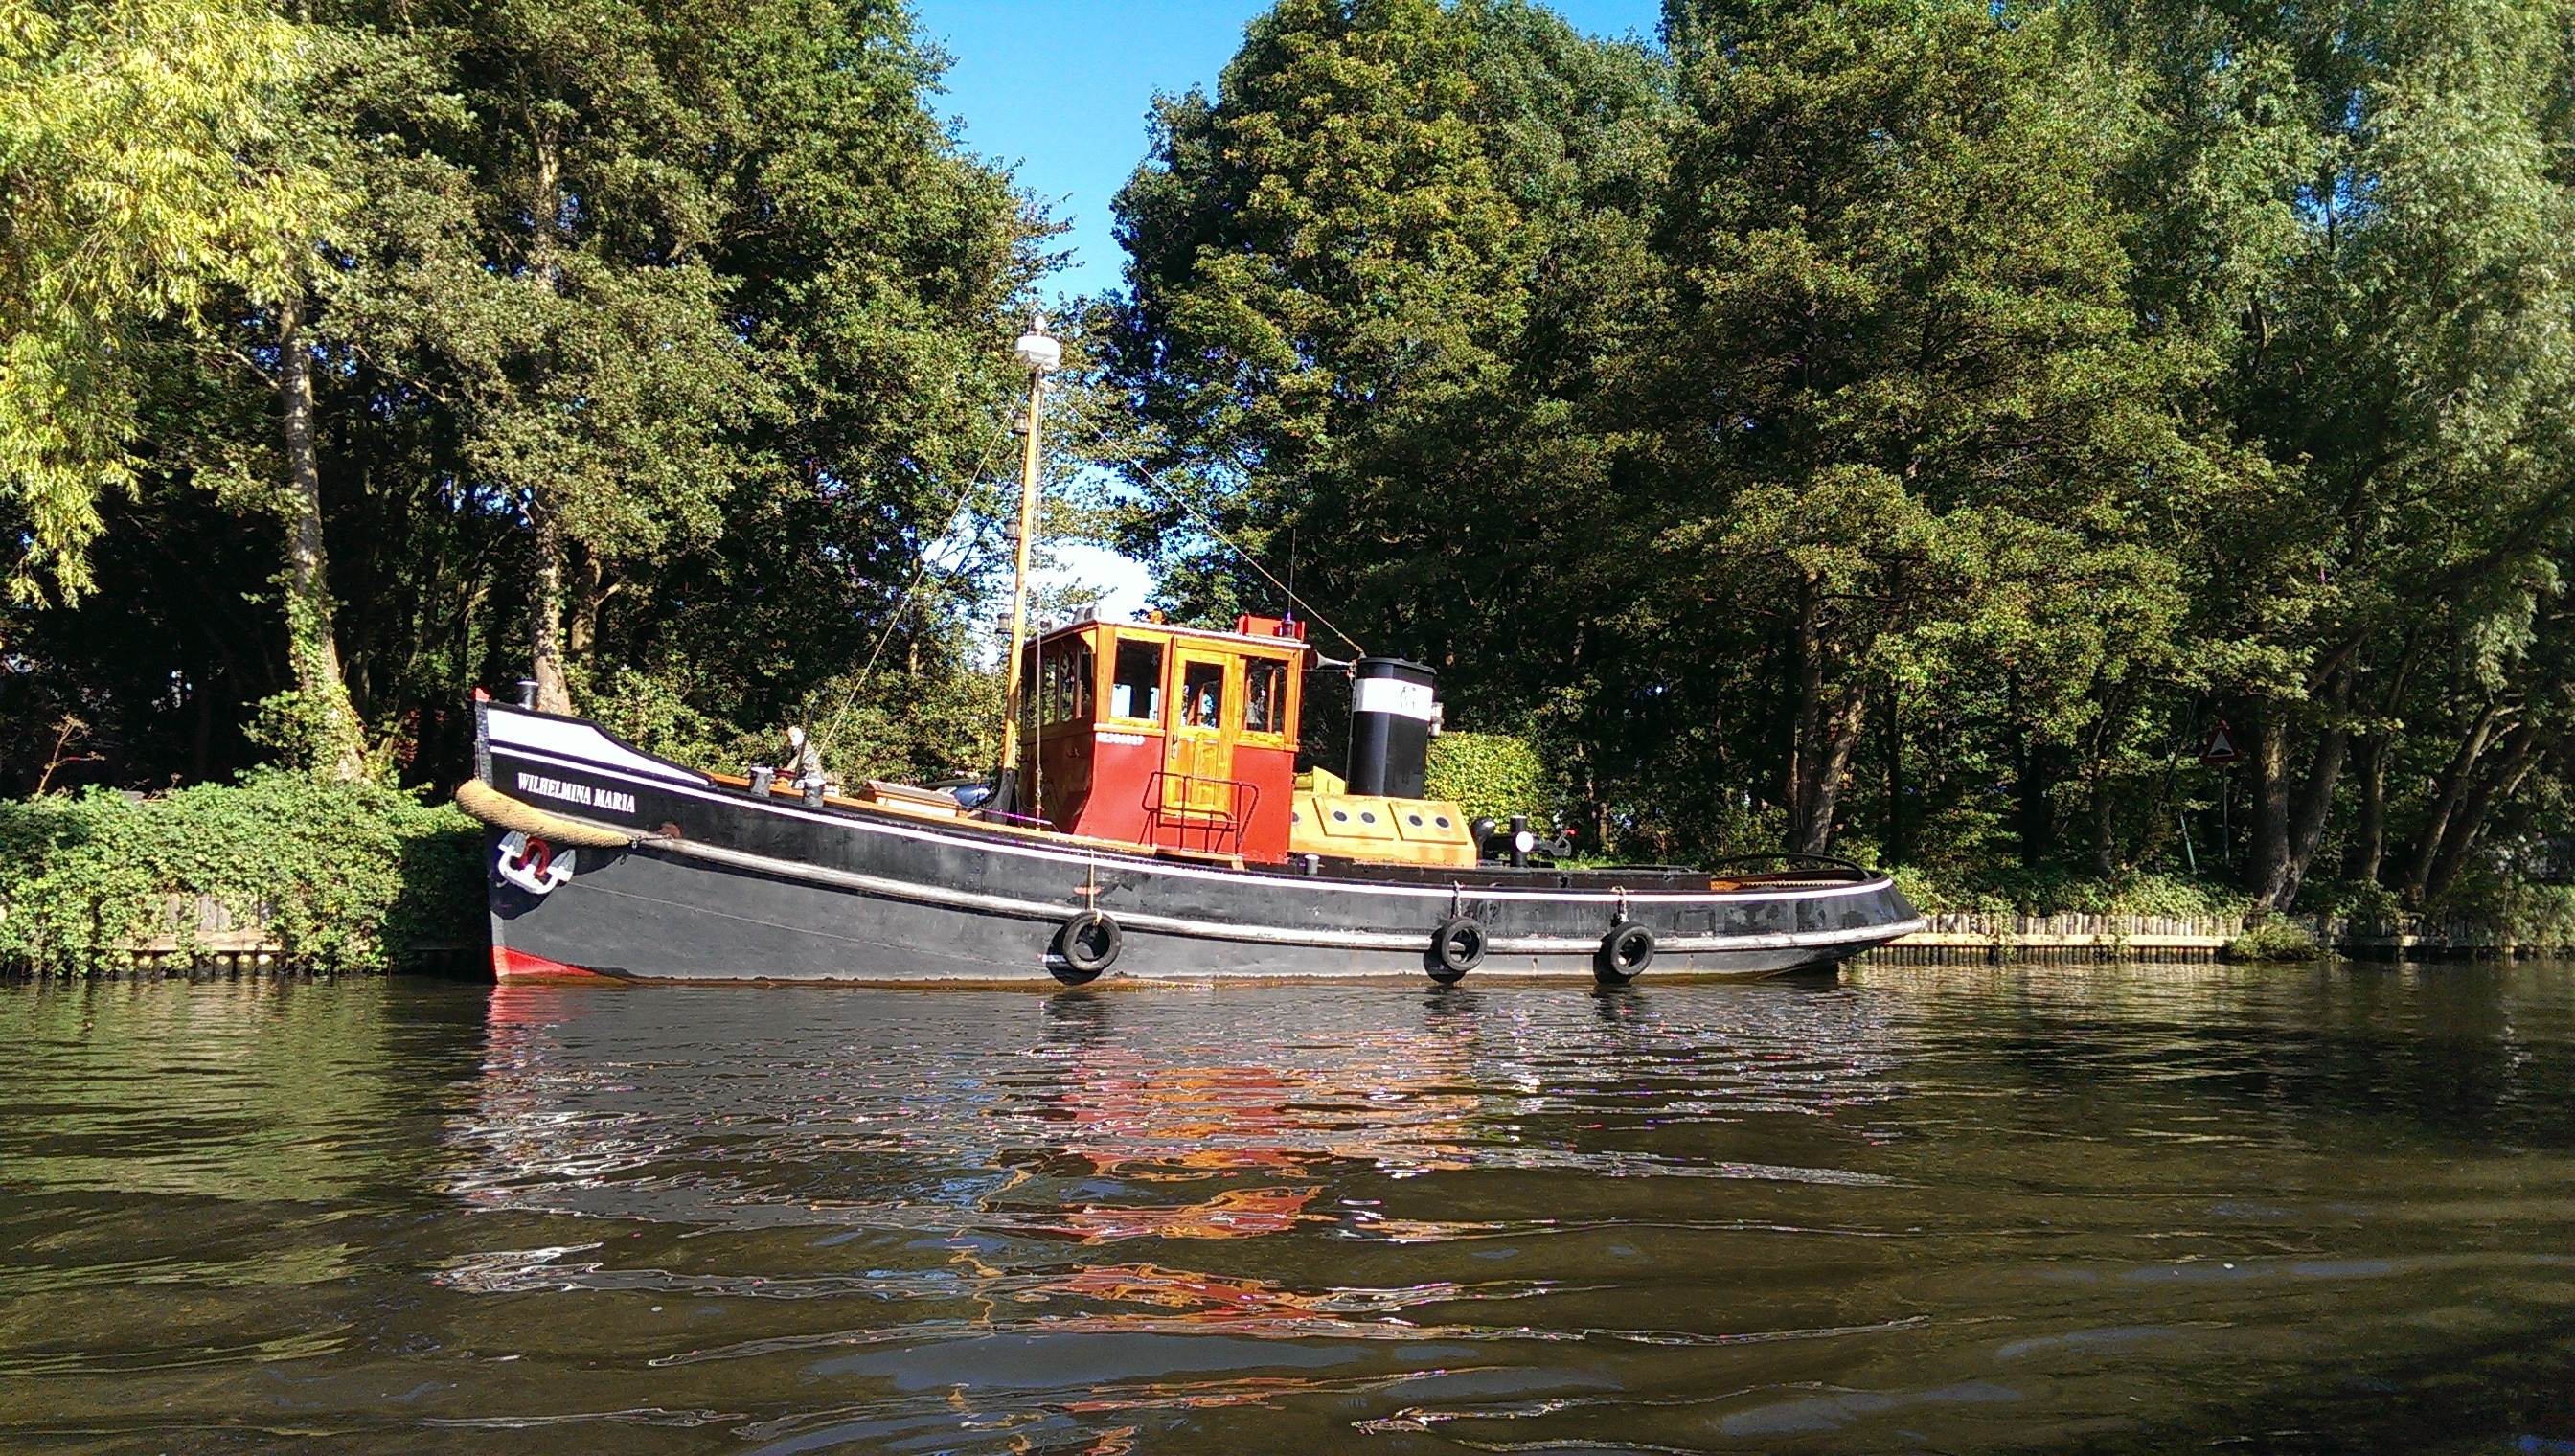 Видео лодок на воде. Черная лодка. Фрисландия корабль. Голландские маленькие суда по речке. Забор воды для лодки.